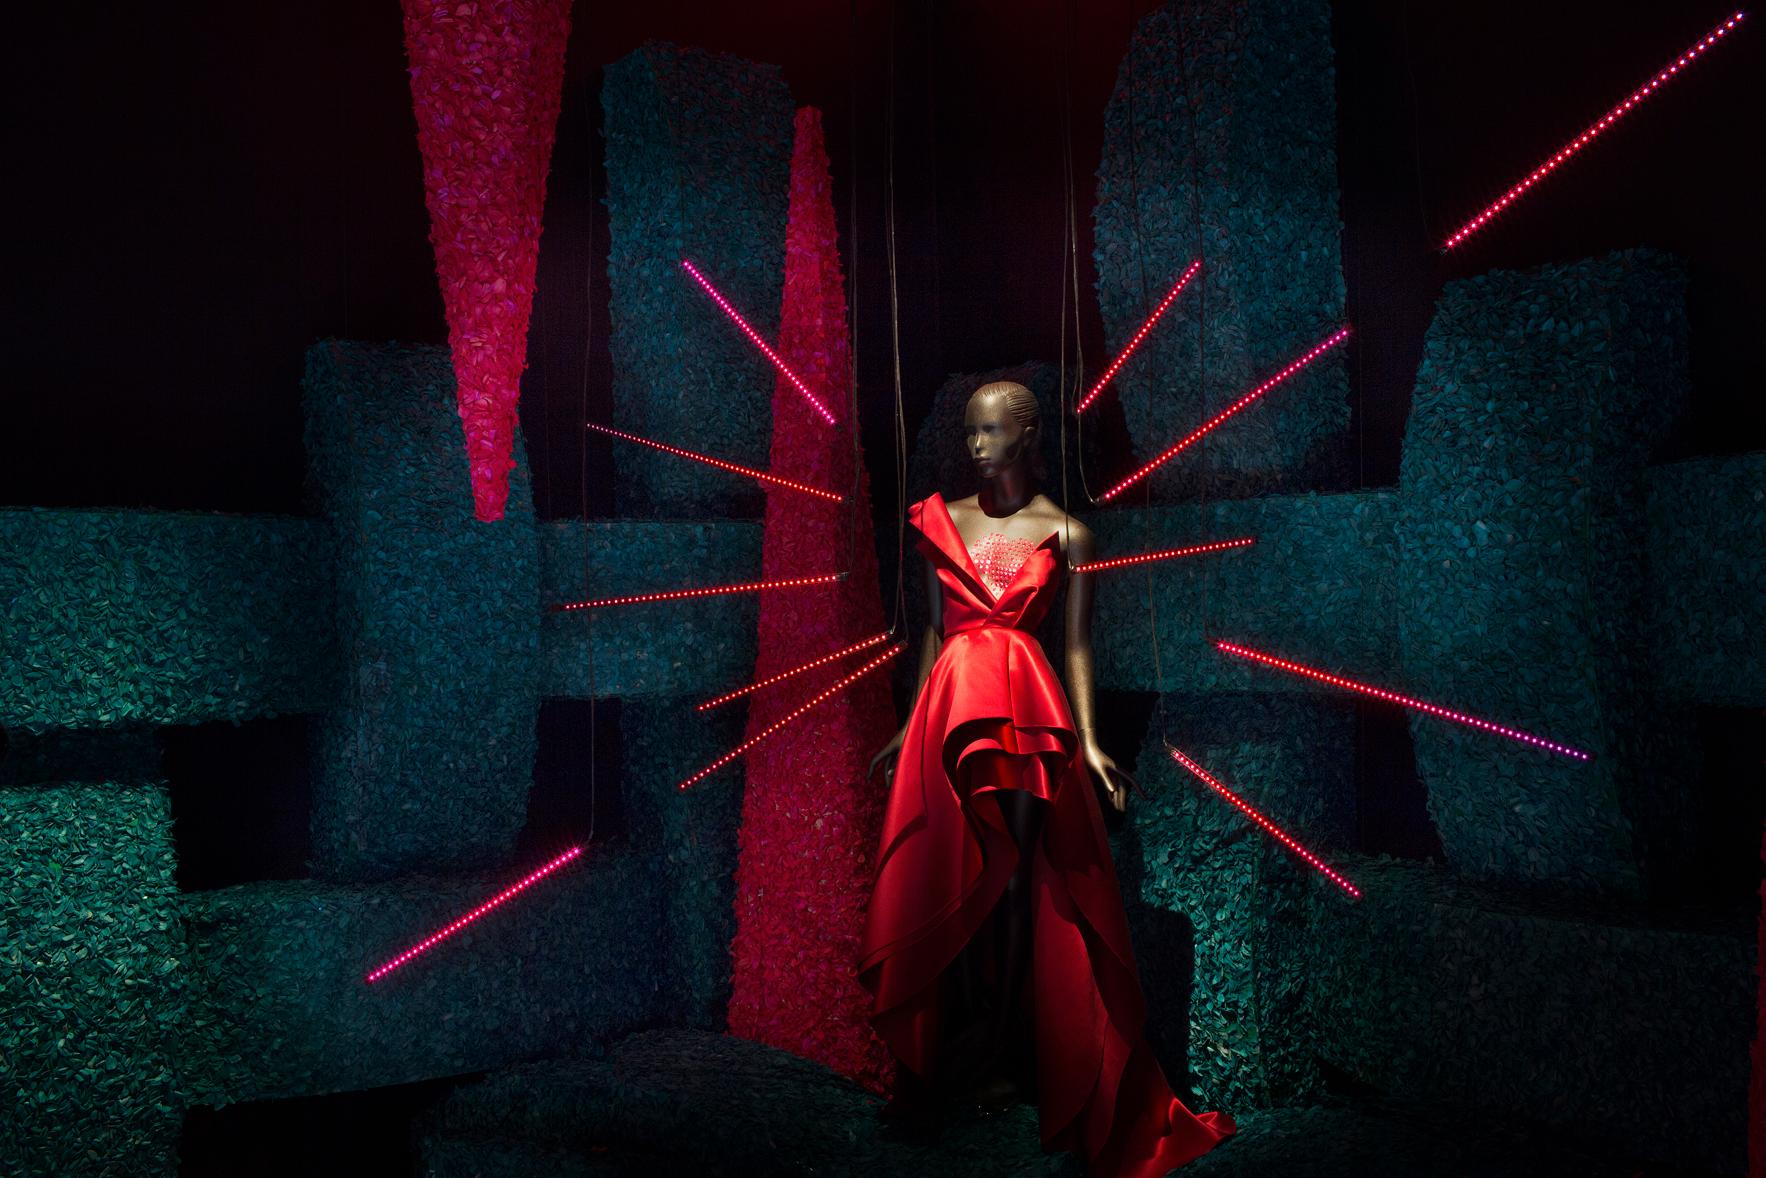 Trend och tvivel  H&M:s klänning ”Kärlek” i rummet med samma namn. Besökaren uppmanas att leta efter sin egen framtidsvision med ugångspunkt från ”modet sinneboende kraft” –  frågan är om utställningsmakarna själva tror på den.